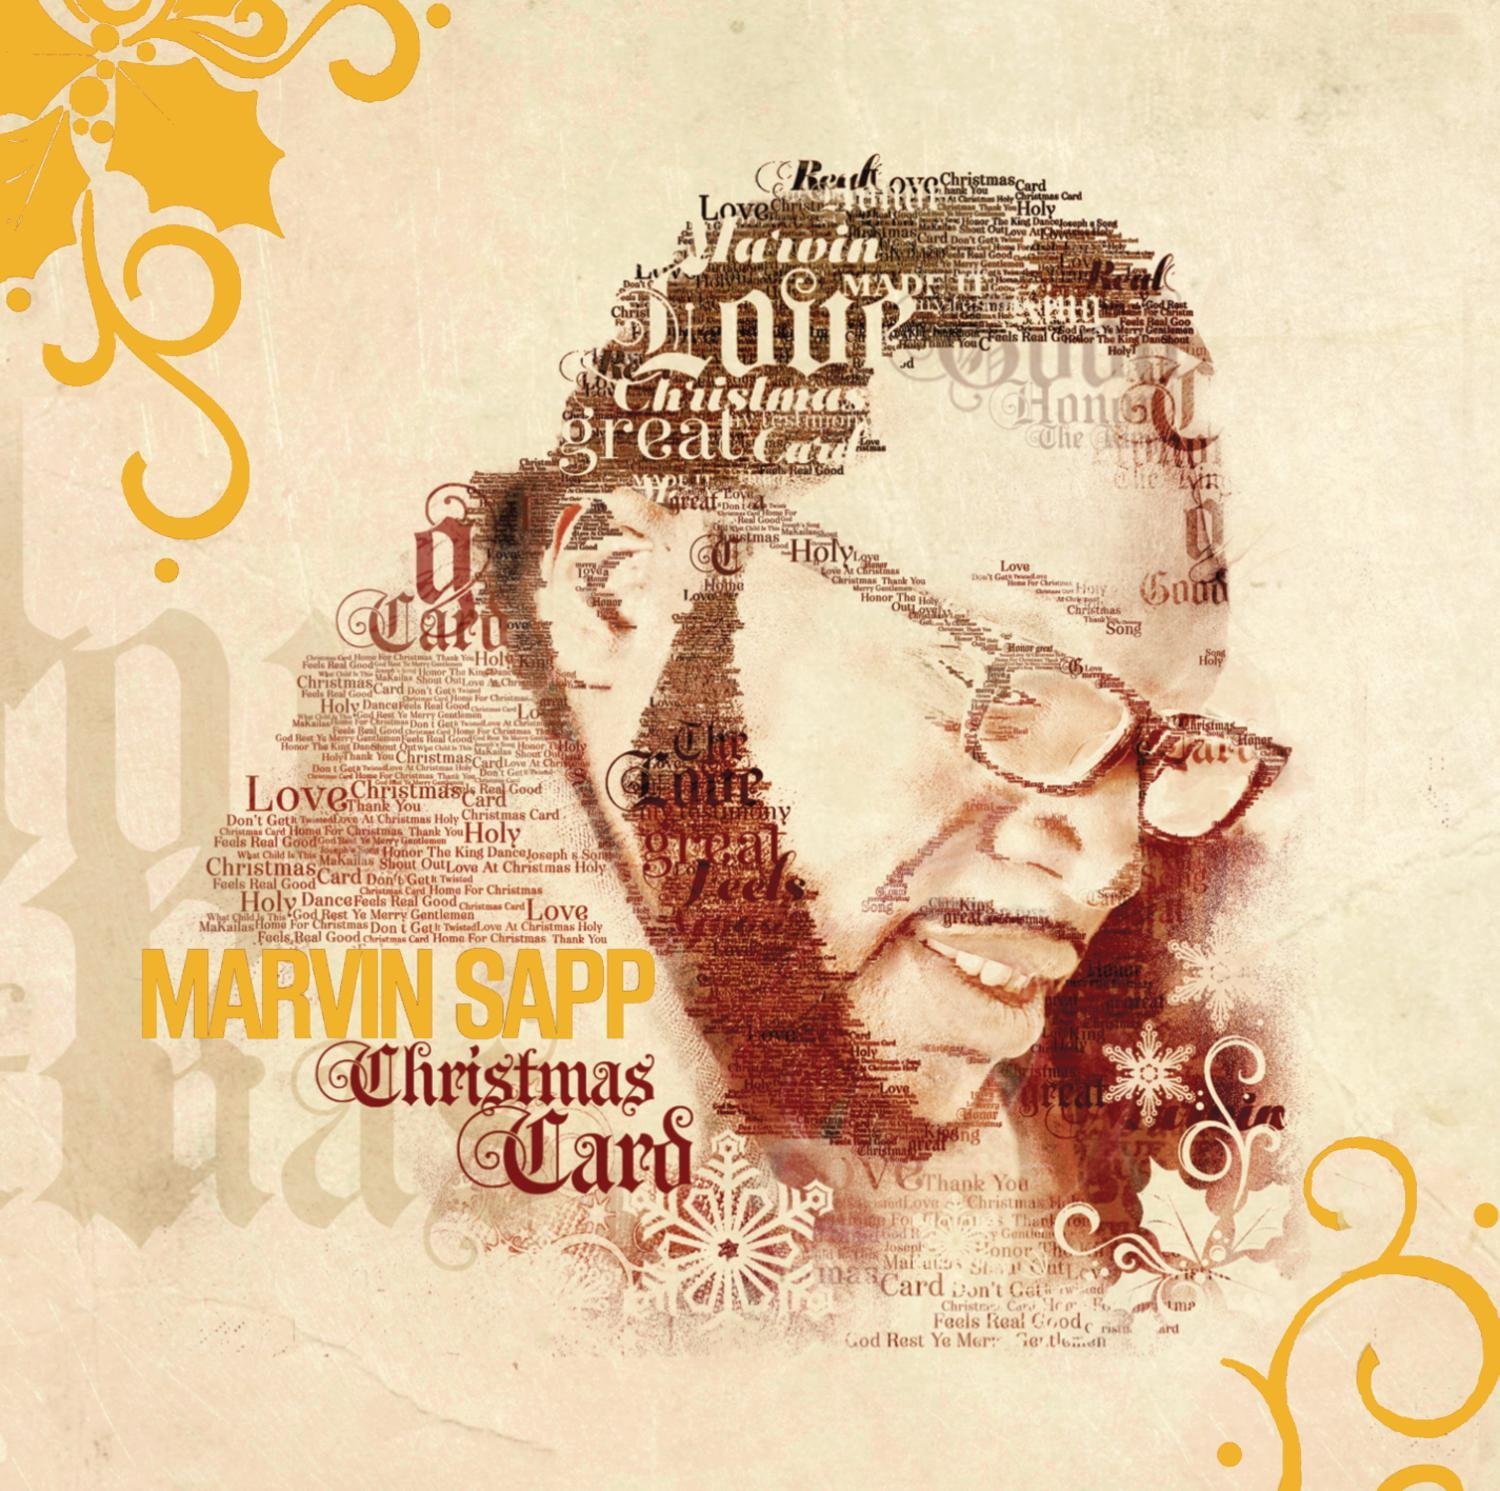 Marvin Sapp - Christmas Card - Amazon.com Music